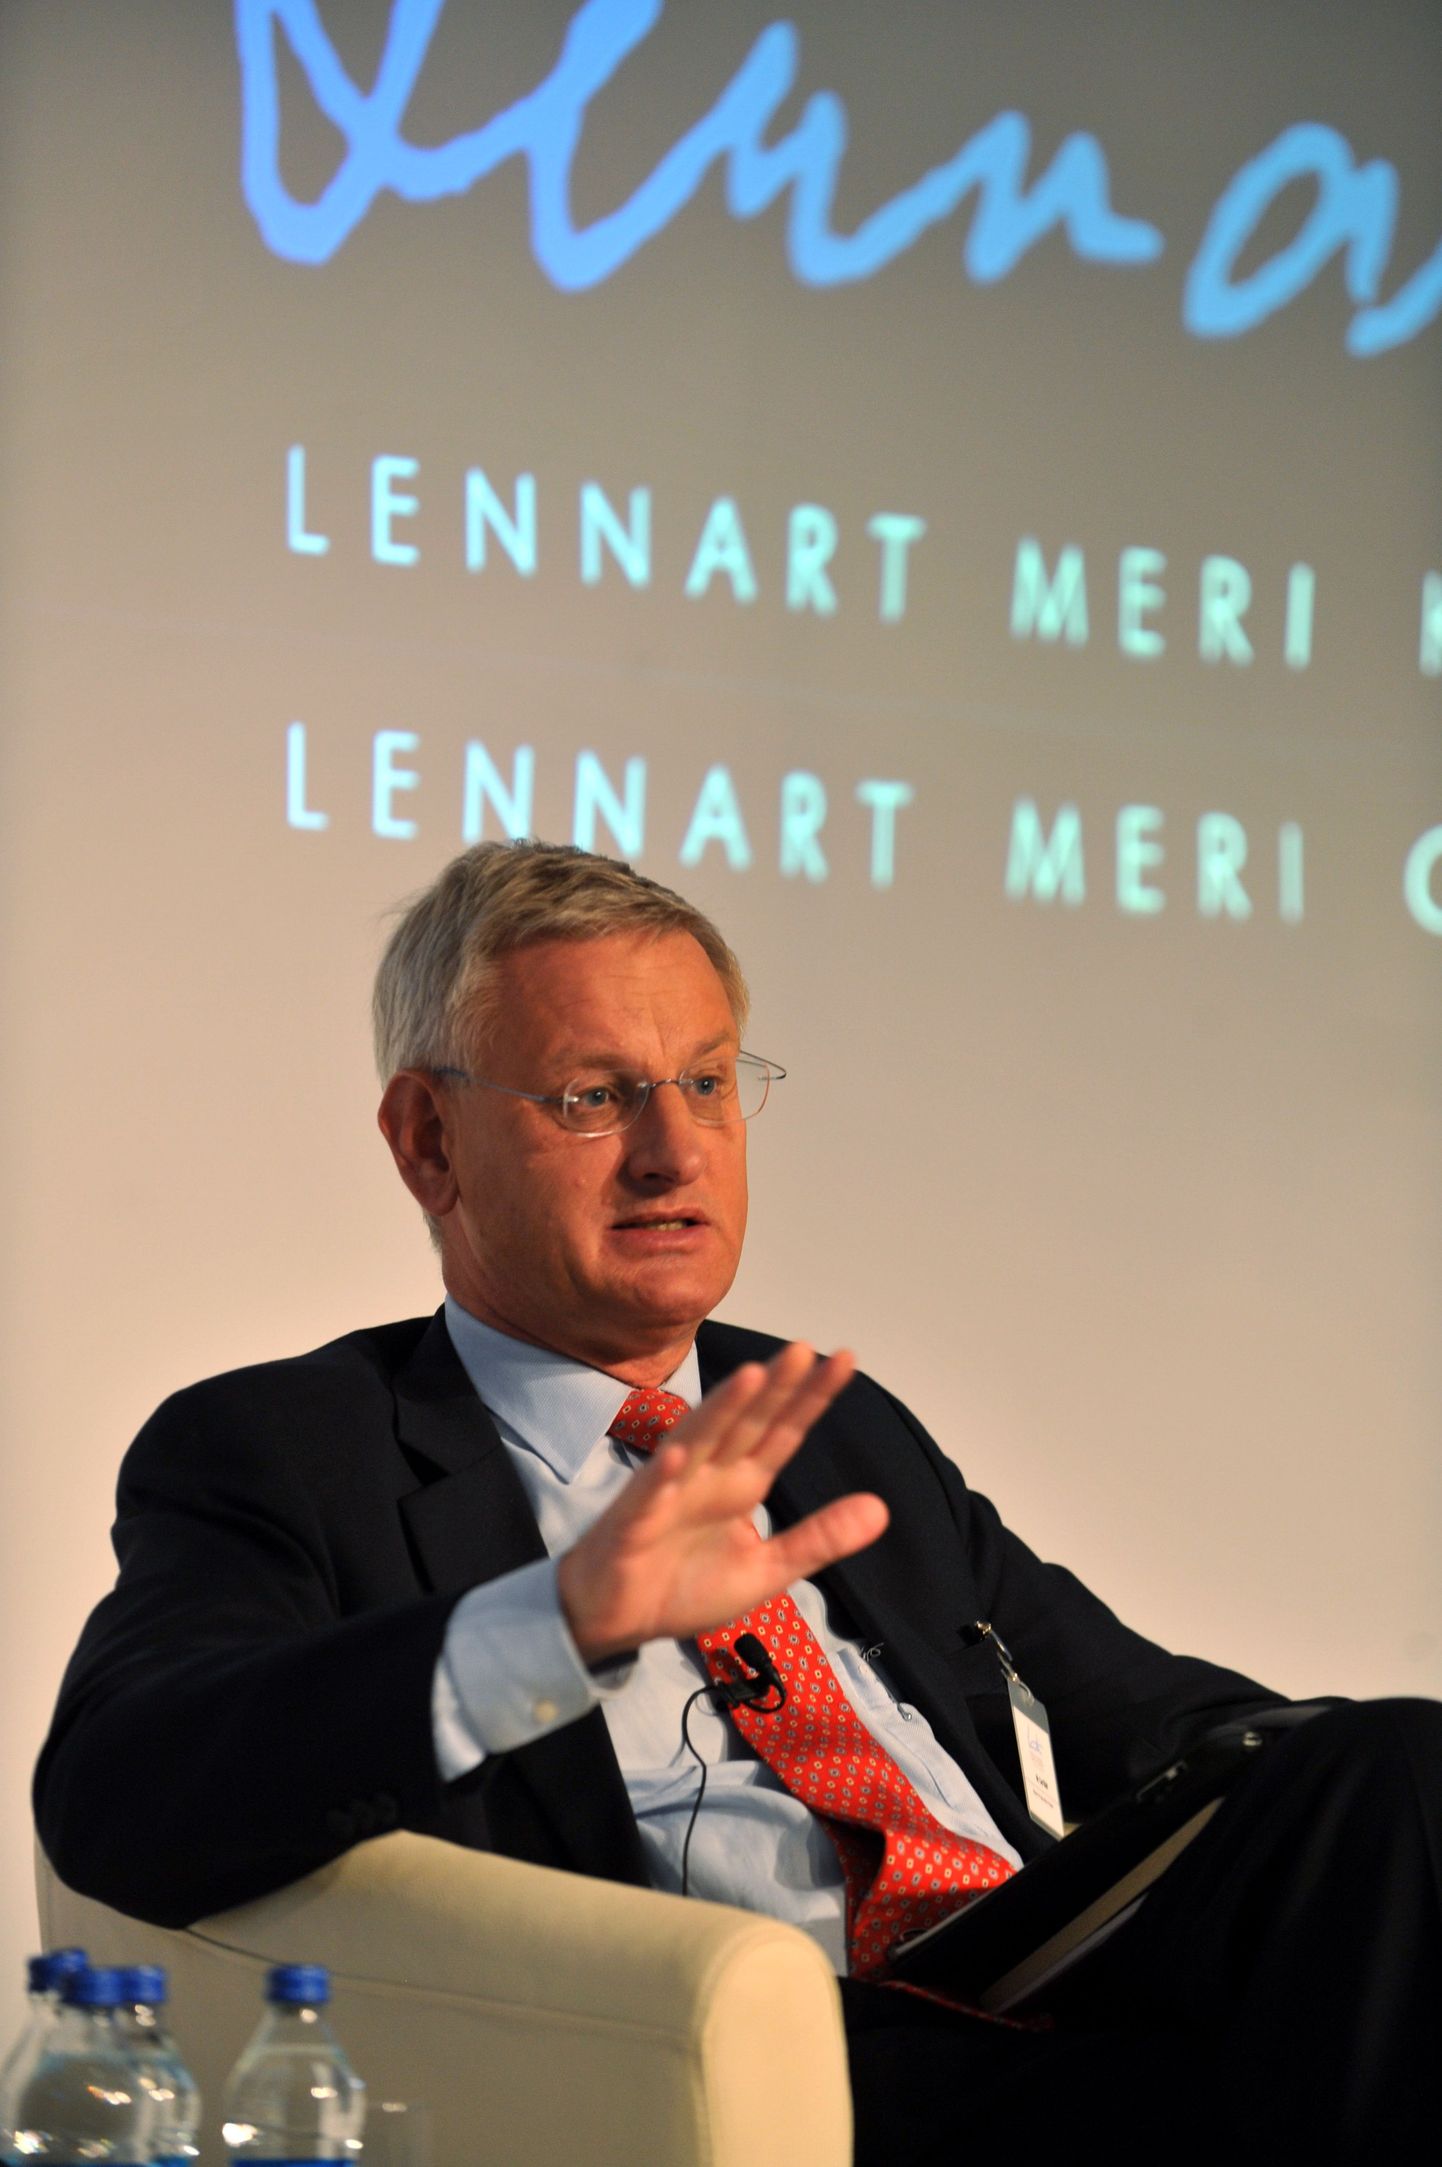 Rootsi välisminister Carl Bildt osaleb Lennart Meri konverentsil selgi aastal.